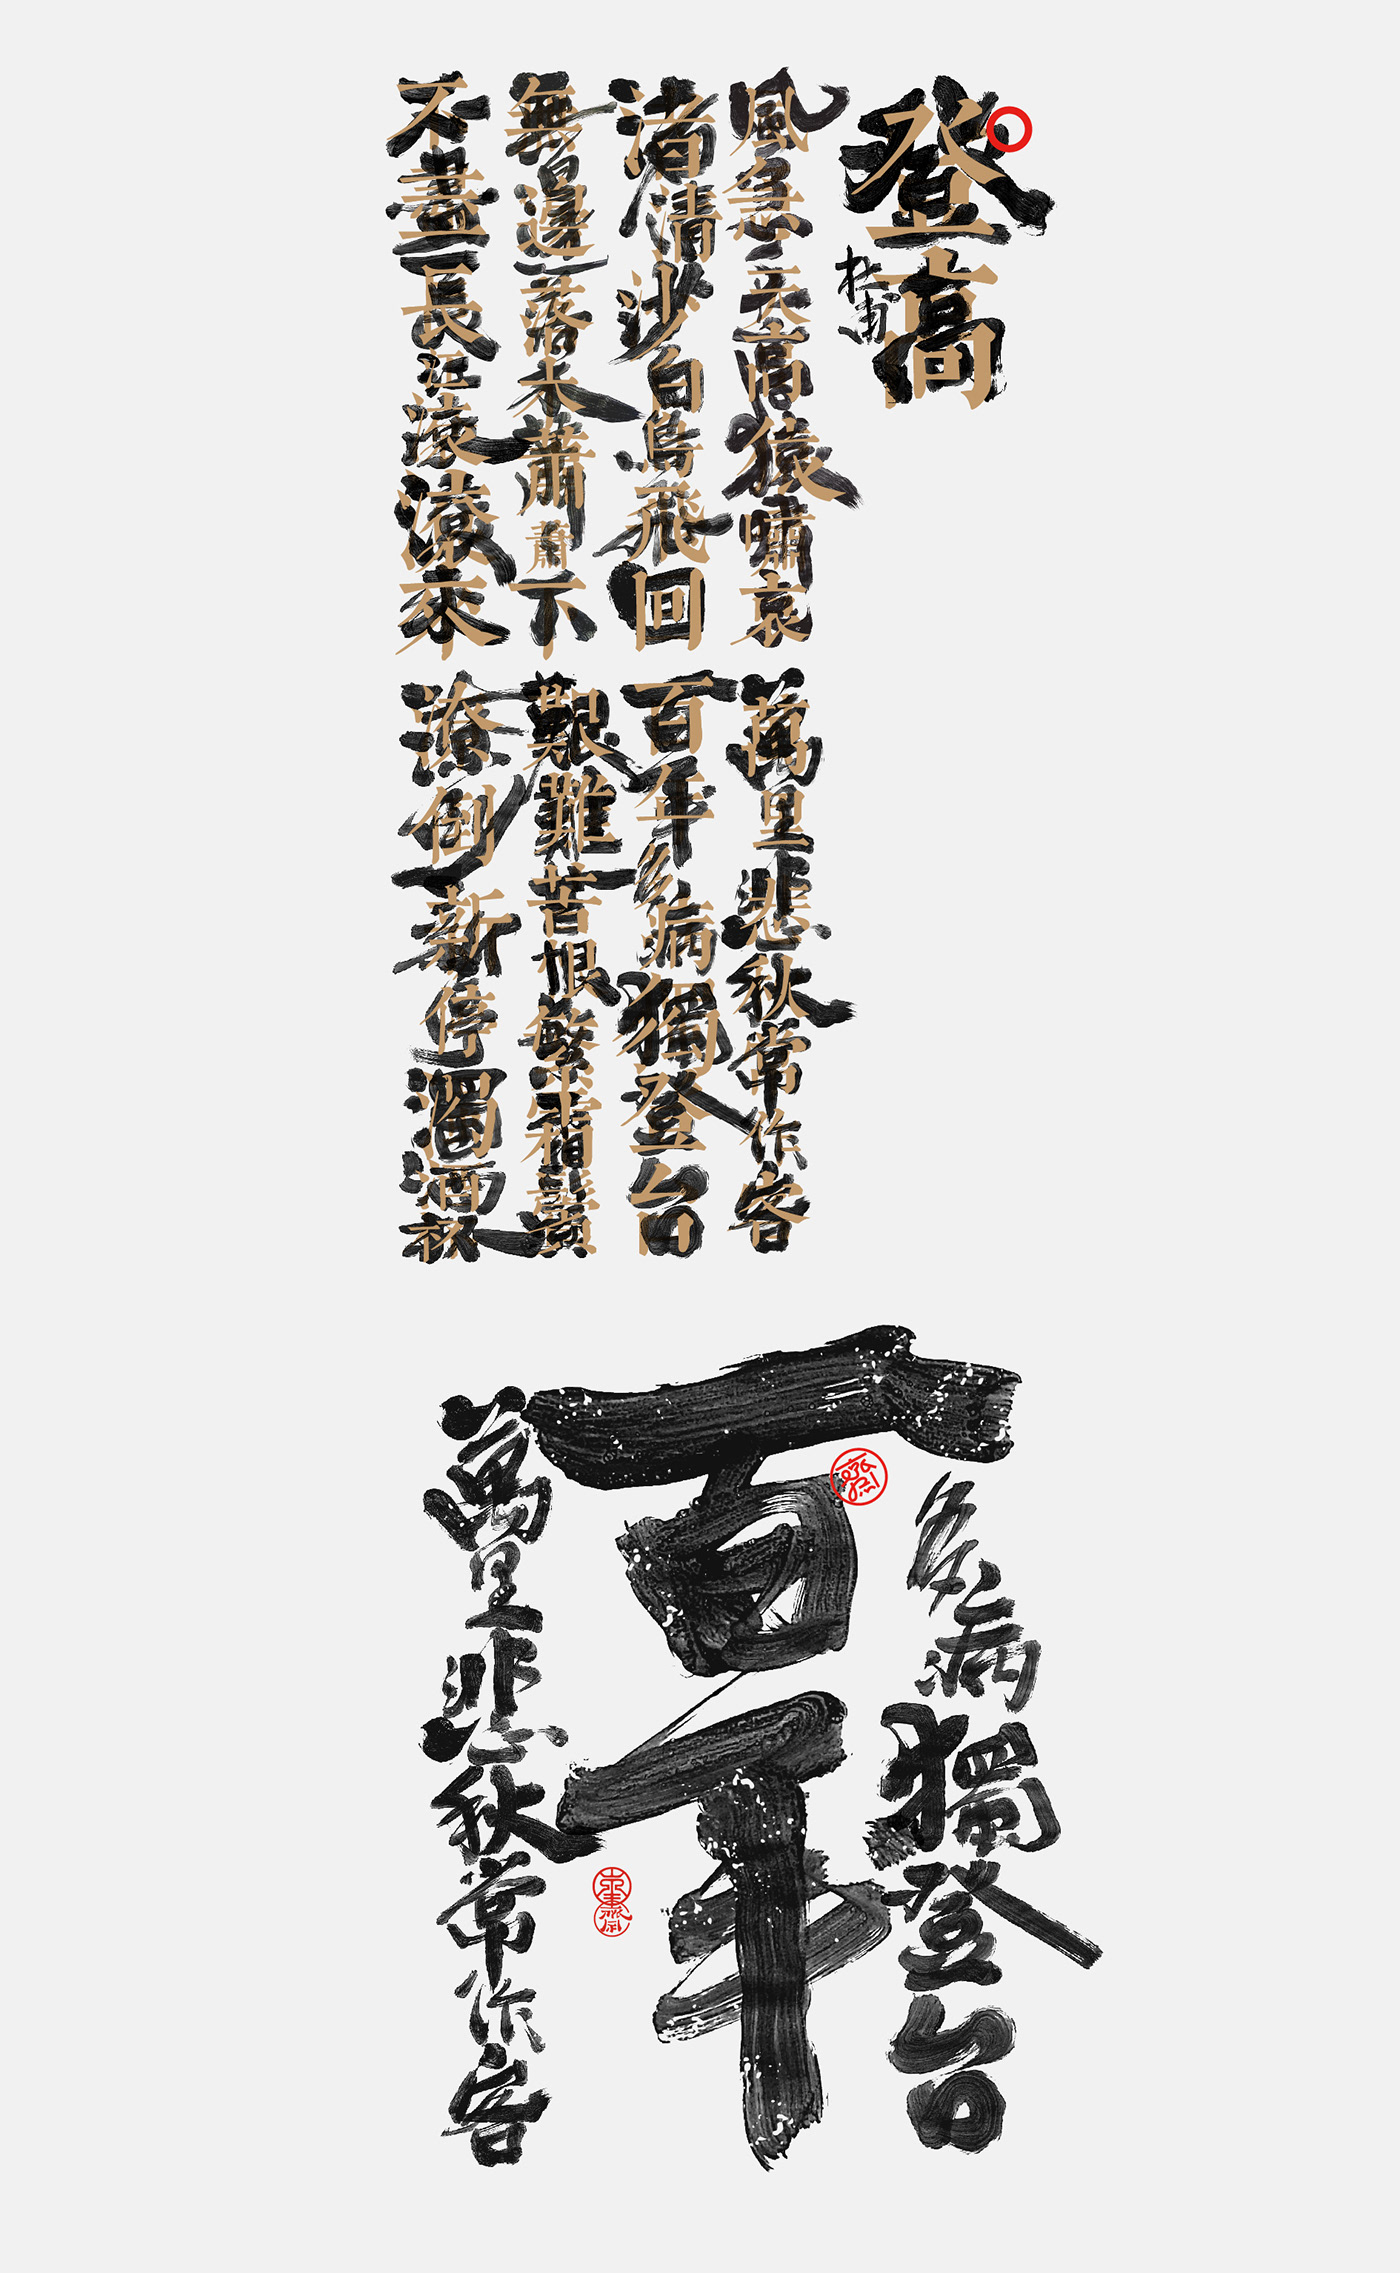 font Logotype 中国风   创意 原创  国潮 字体设计 水墨